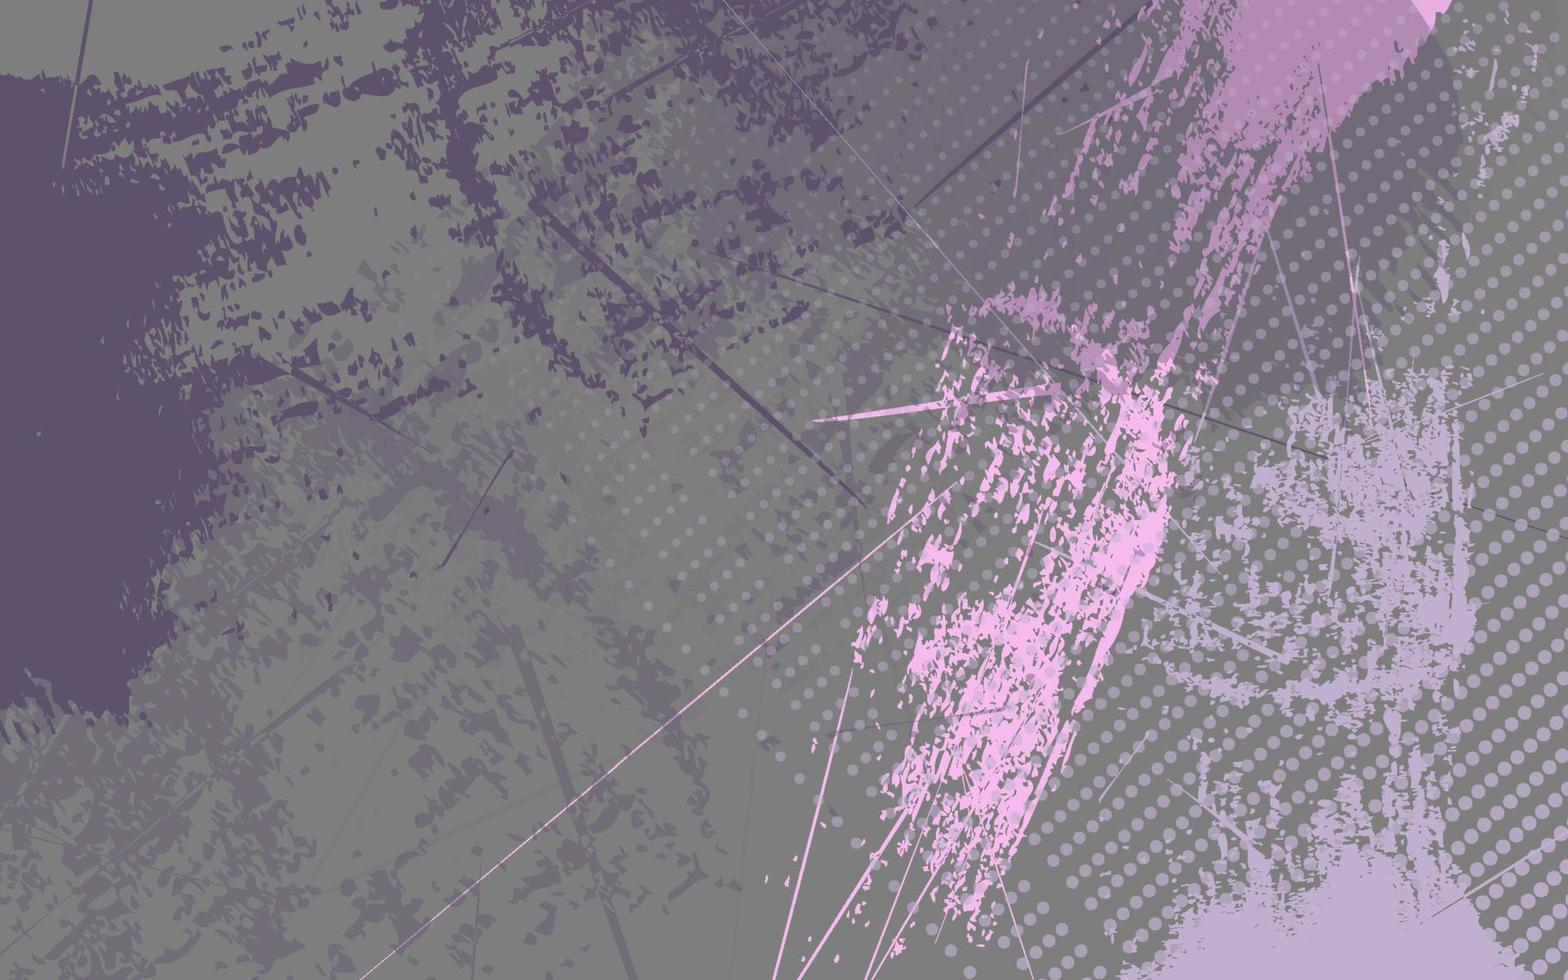 abstrakter Grunge-Textur pastellfarbener Hintergrund vektor